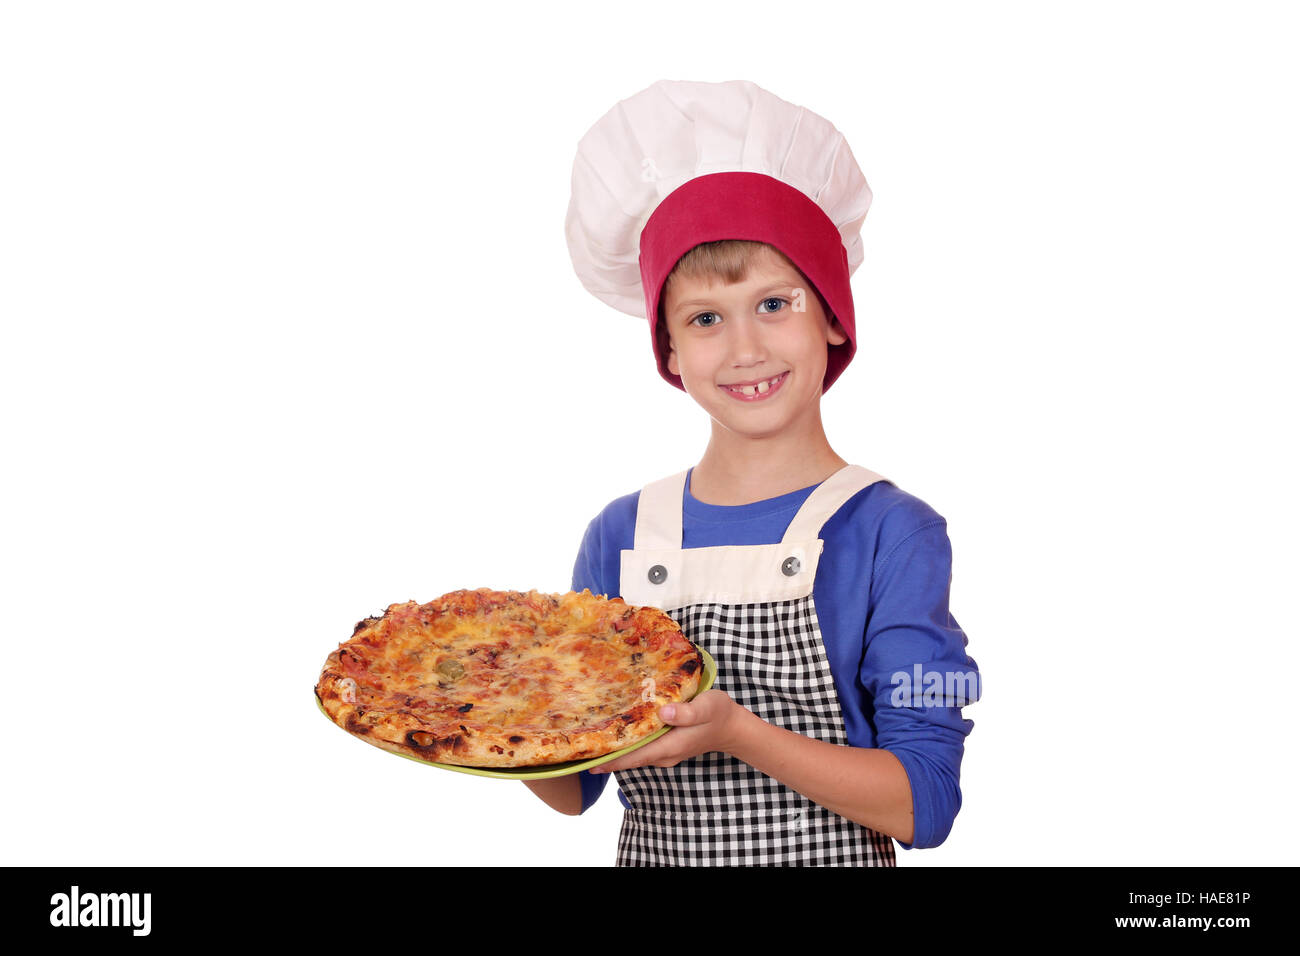 Immagini Stock - Ragazzino In Cappello Da Cuoco E Un Grembiule Che Cucina  Pizza In Cucina. Bambino Che Aggiunge Il Formaggio Alla Pizza. Image  160606273